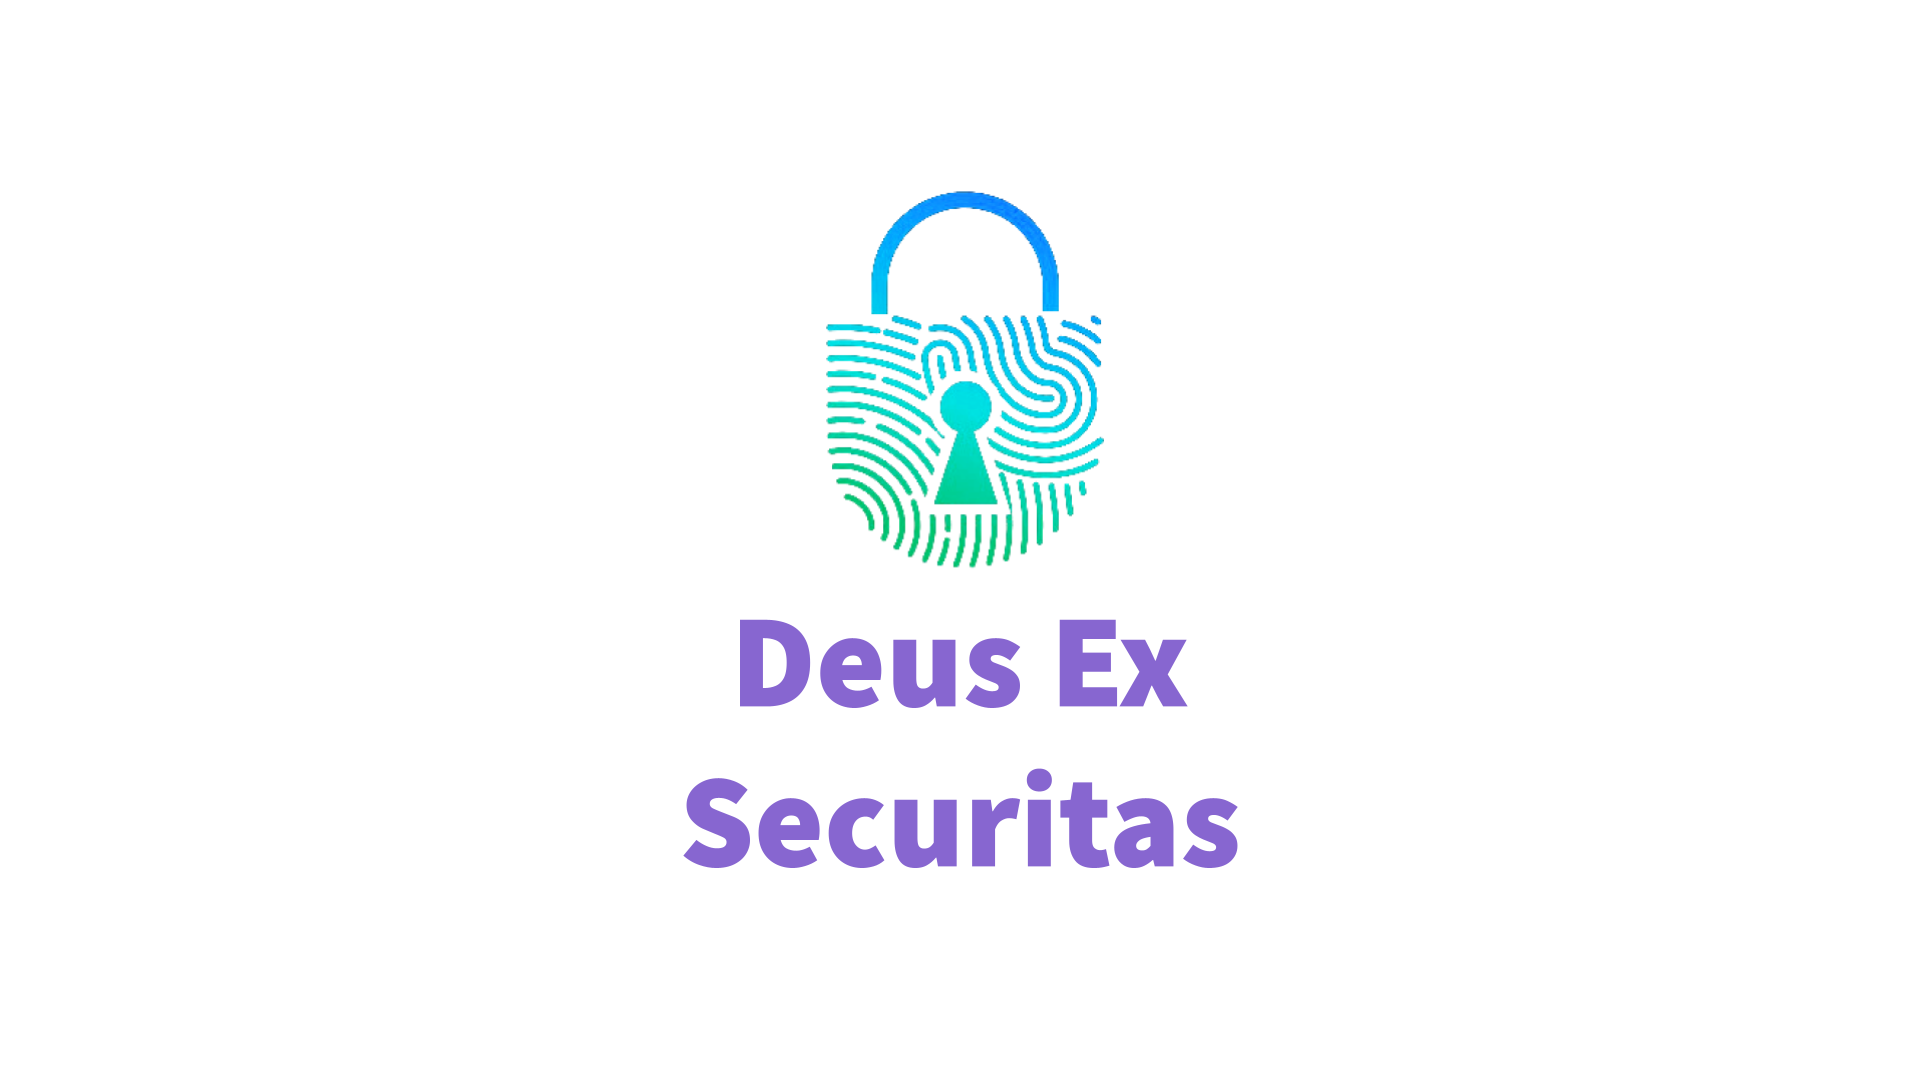 Deus Ex Securitas